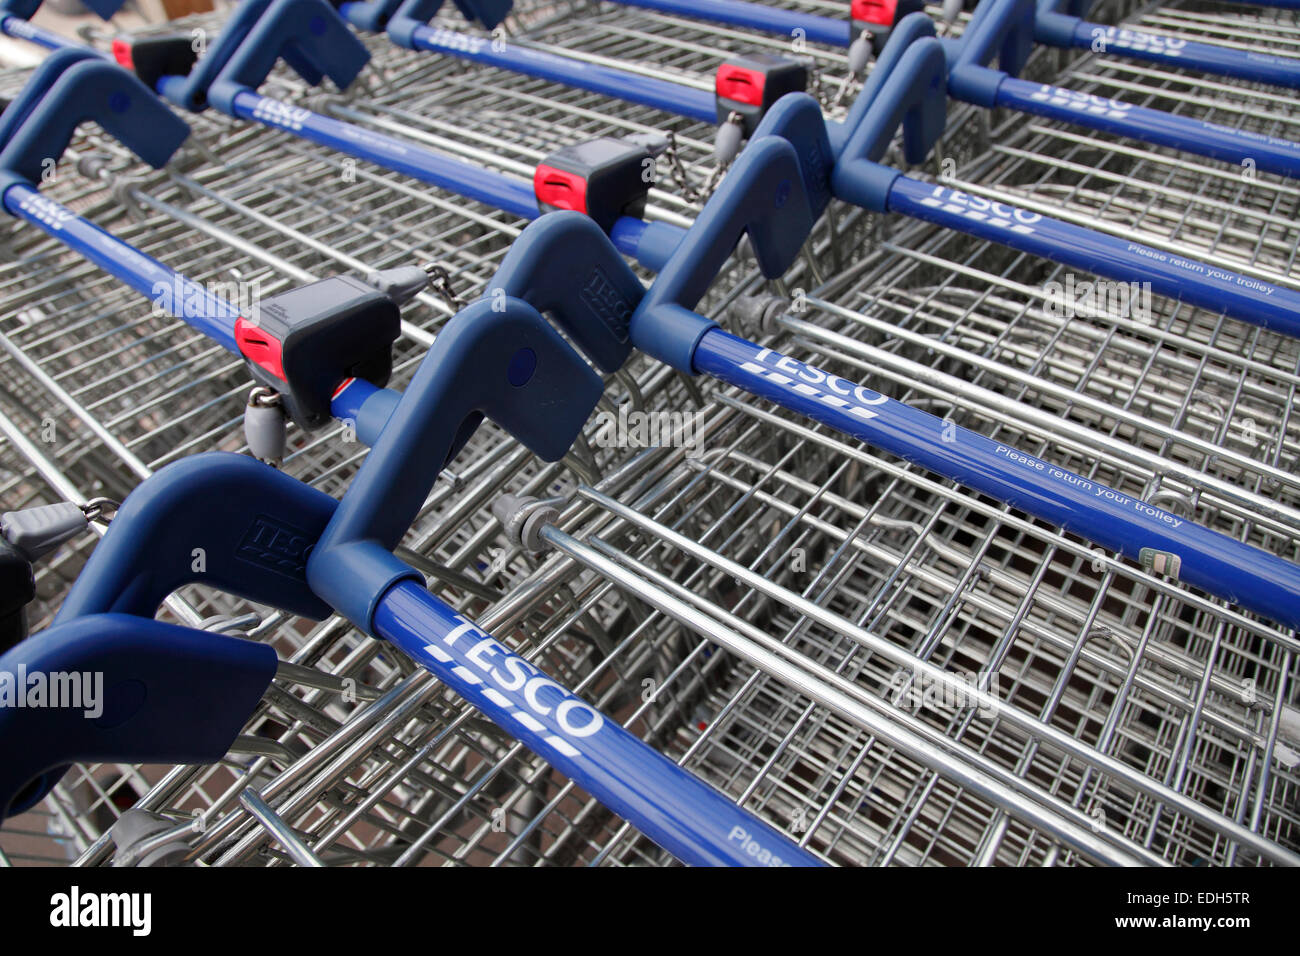 tesco shopping carts Stock Photo